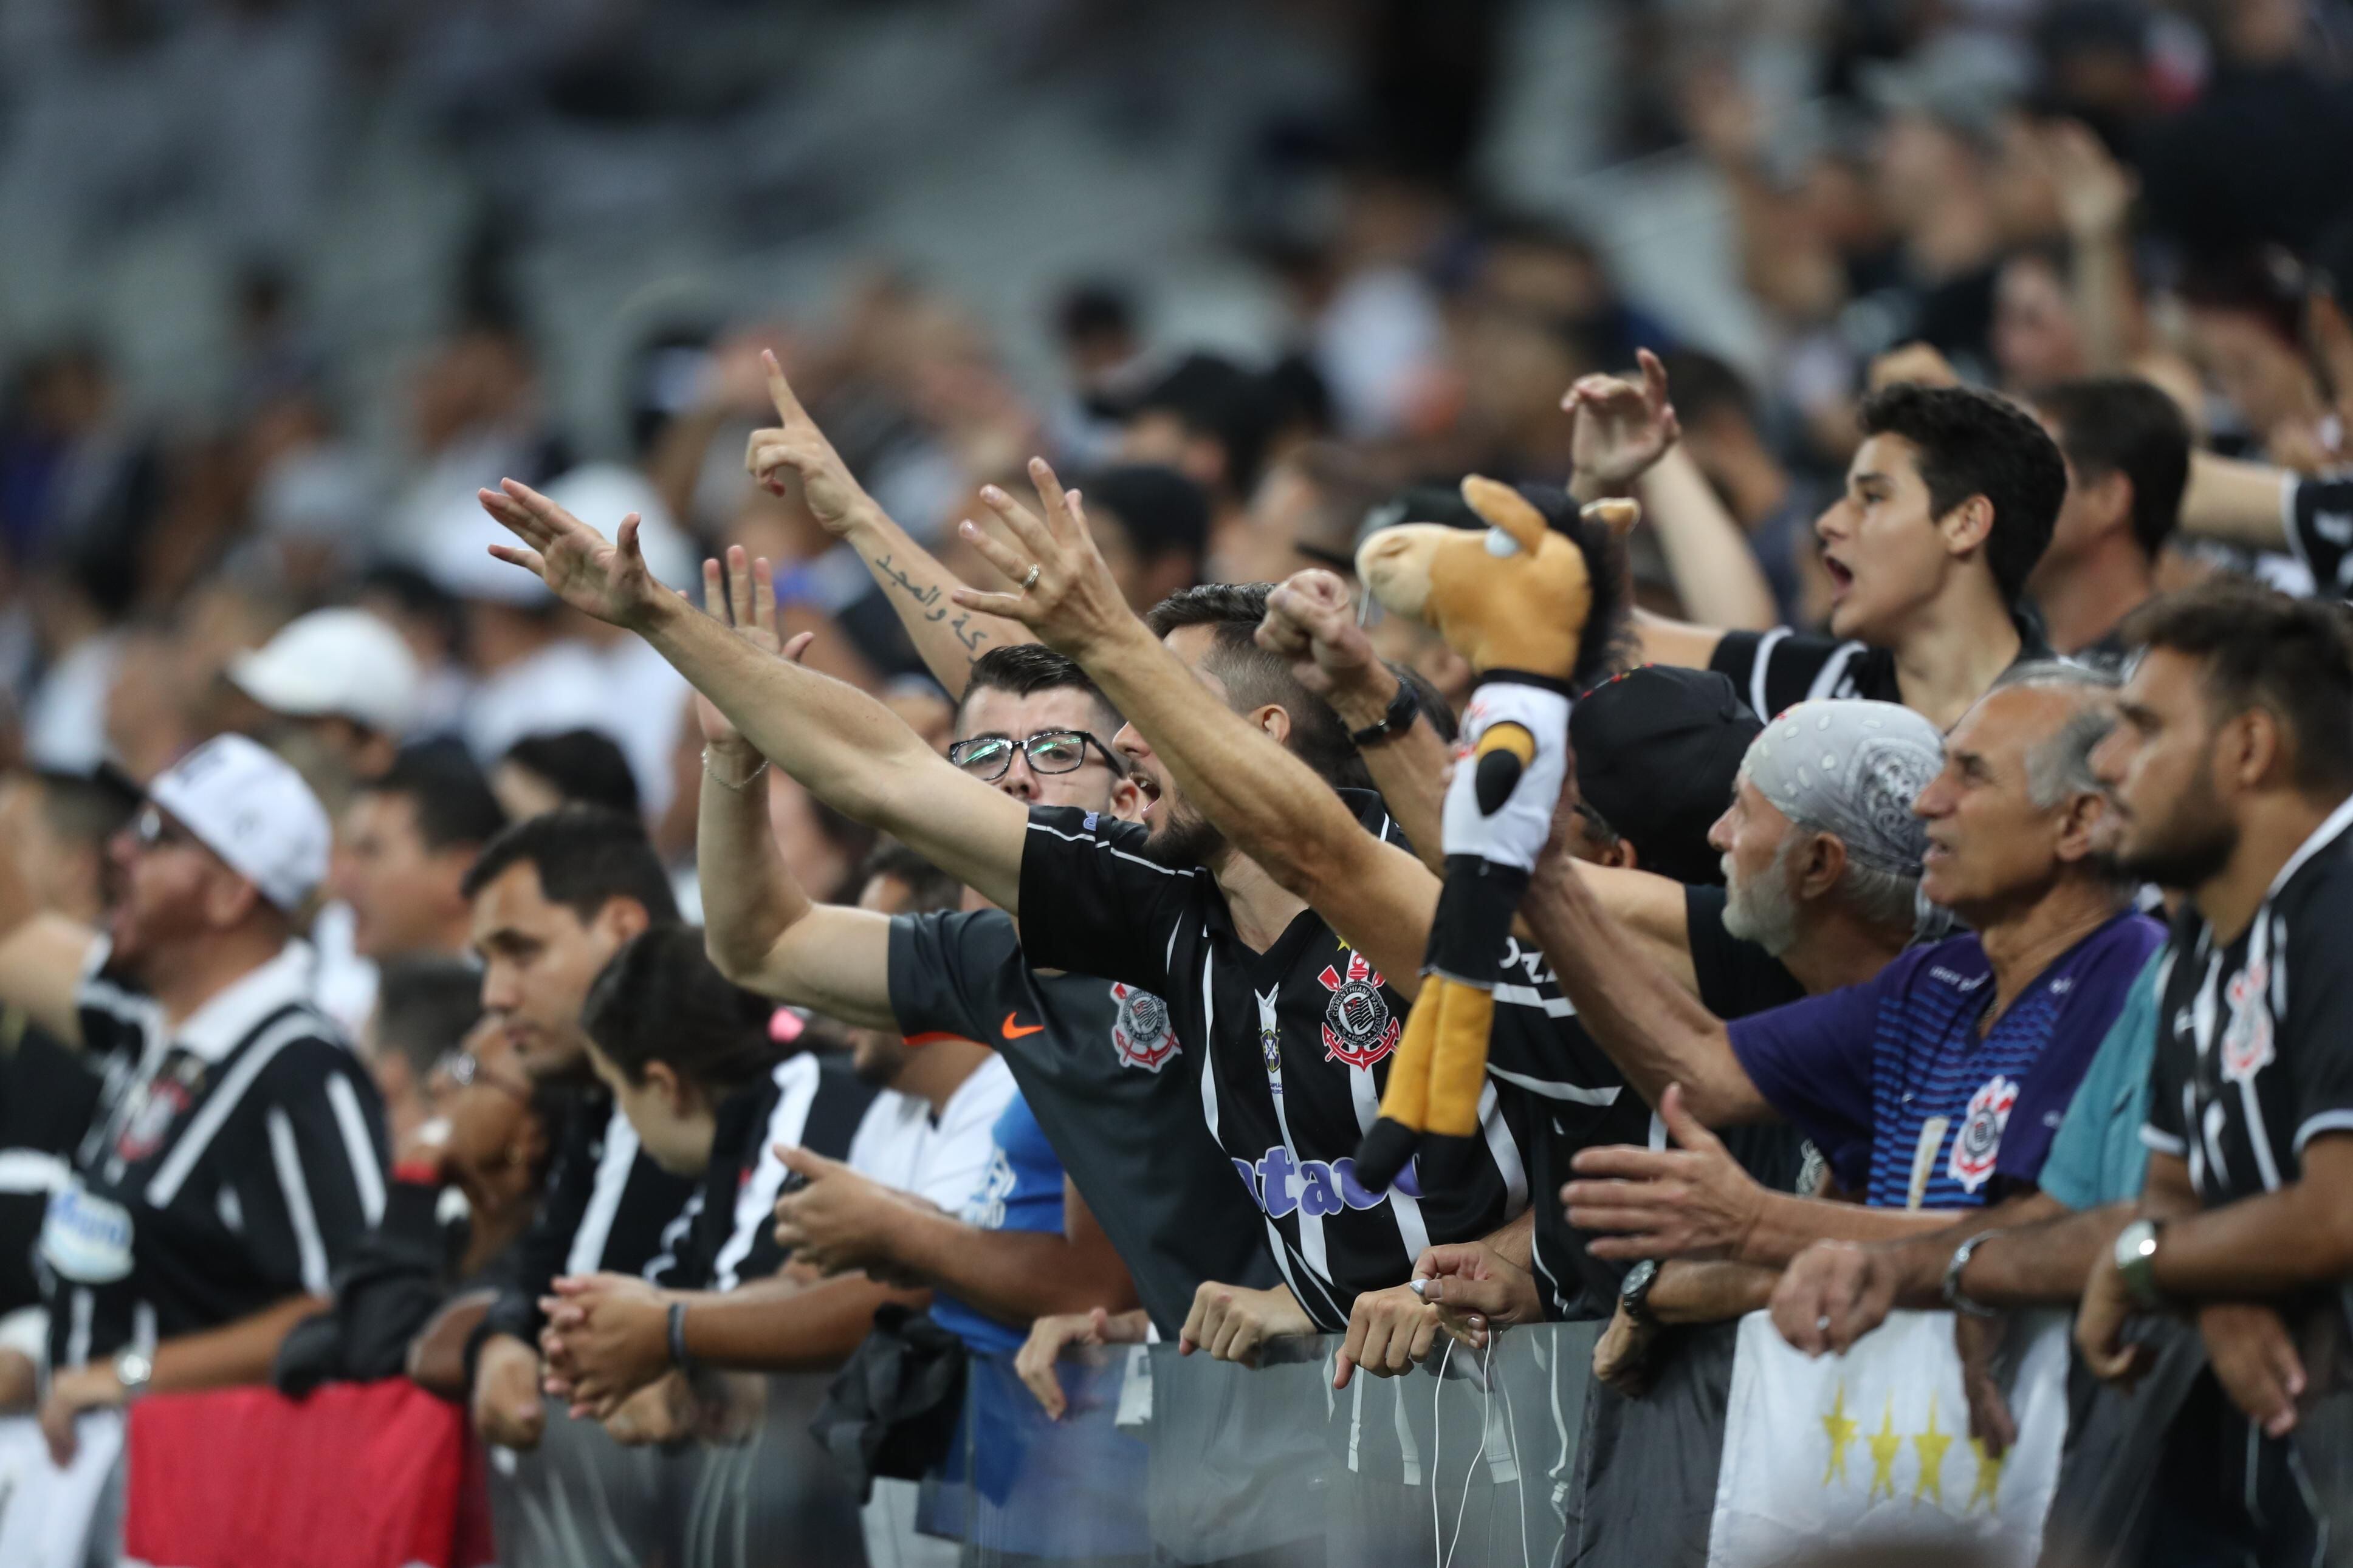 O Corinthians pode perder pontos após os cantos homofóbicos de torcedores?